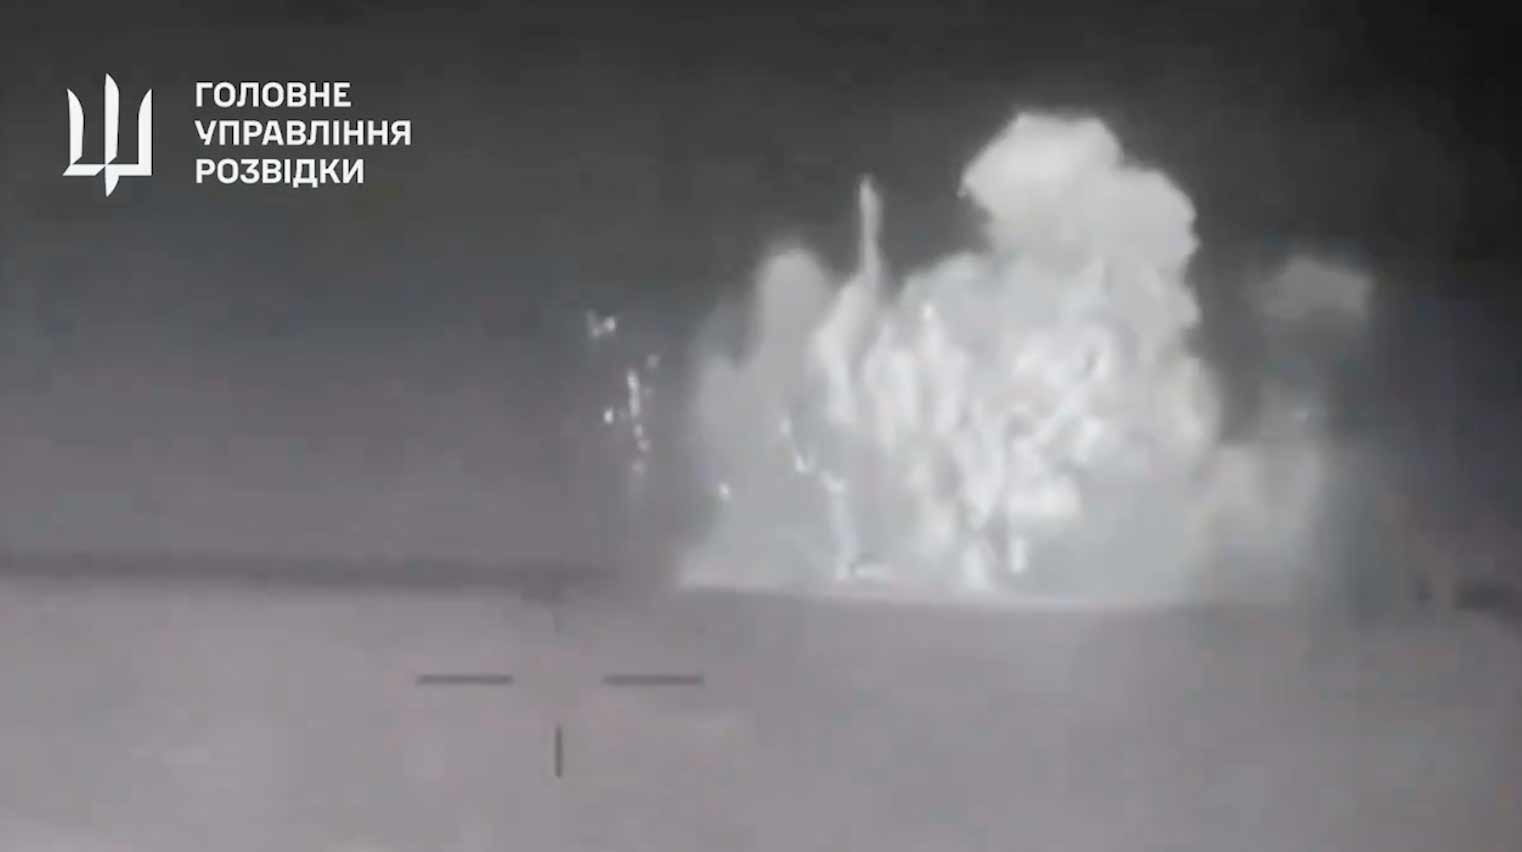 Nouvelle vidéo montre l'explosion qui a coulé le navire russe Sergey Kotov. Reproduction Twitter @wartranslated